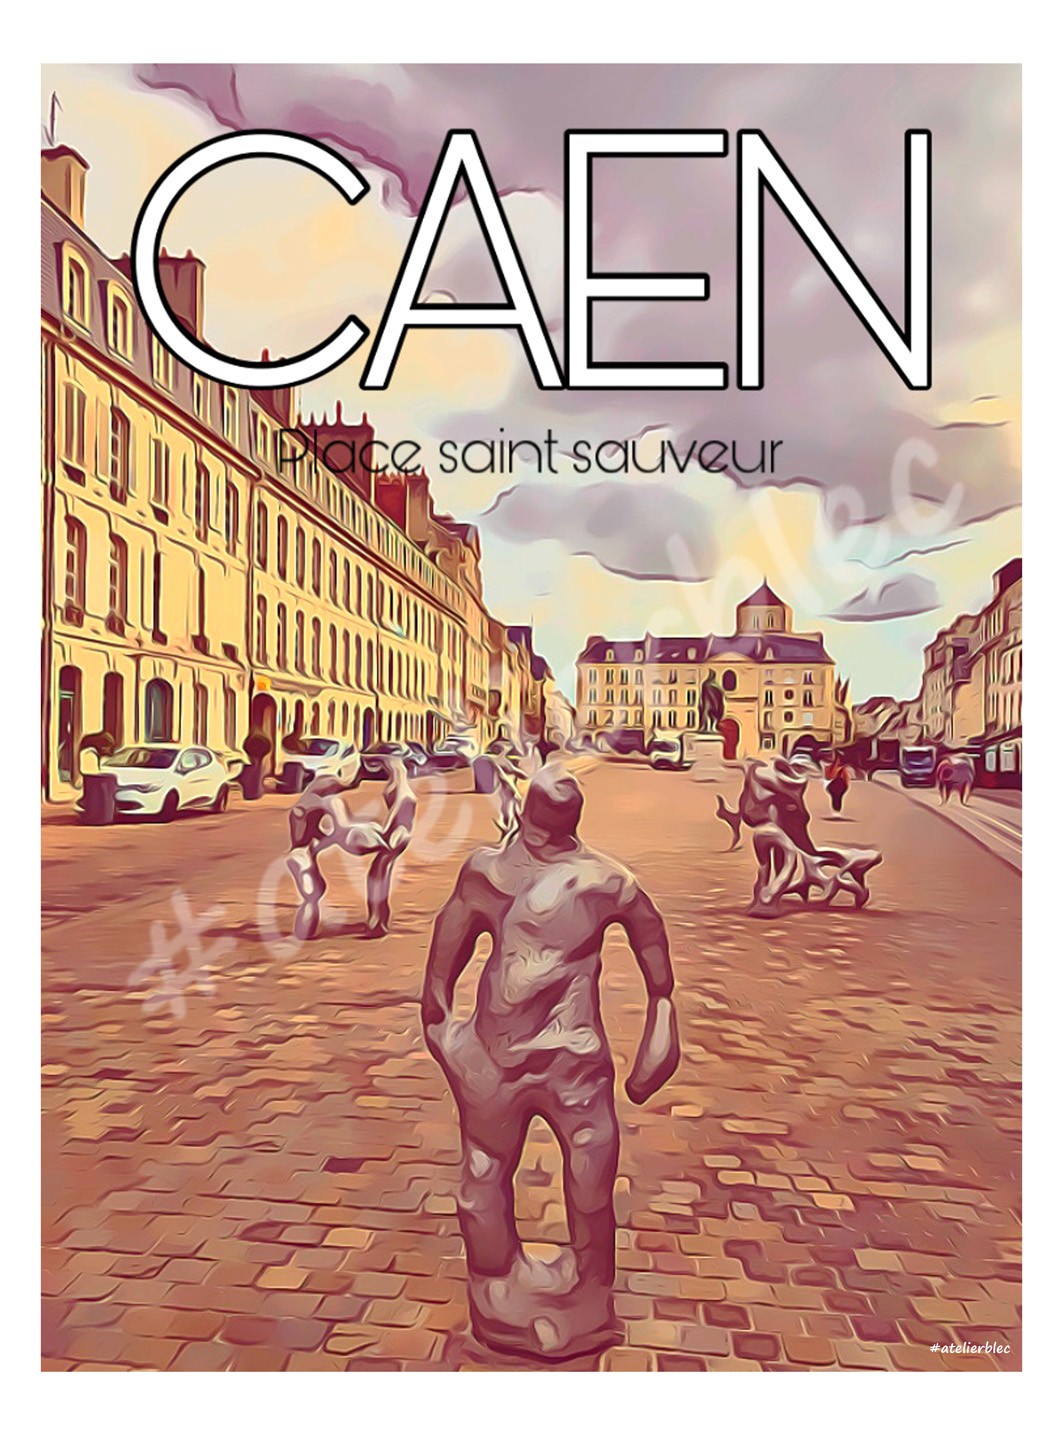 Caen4 st sauveur